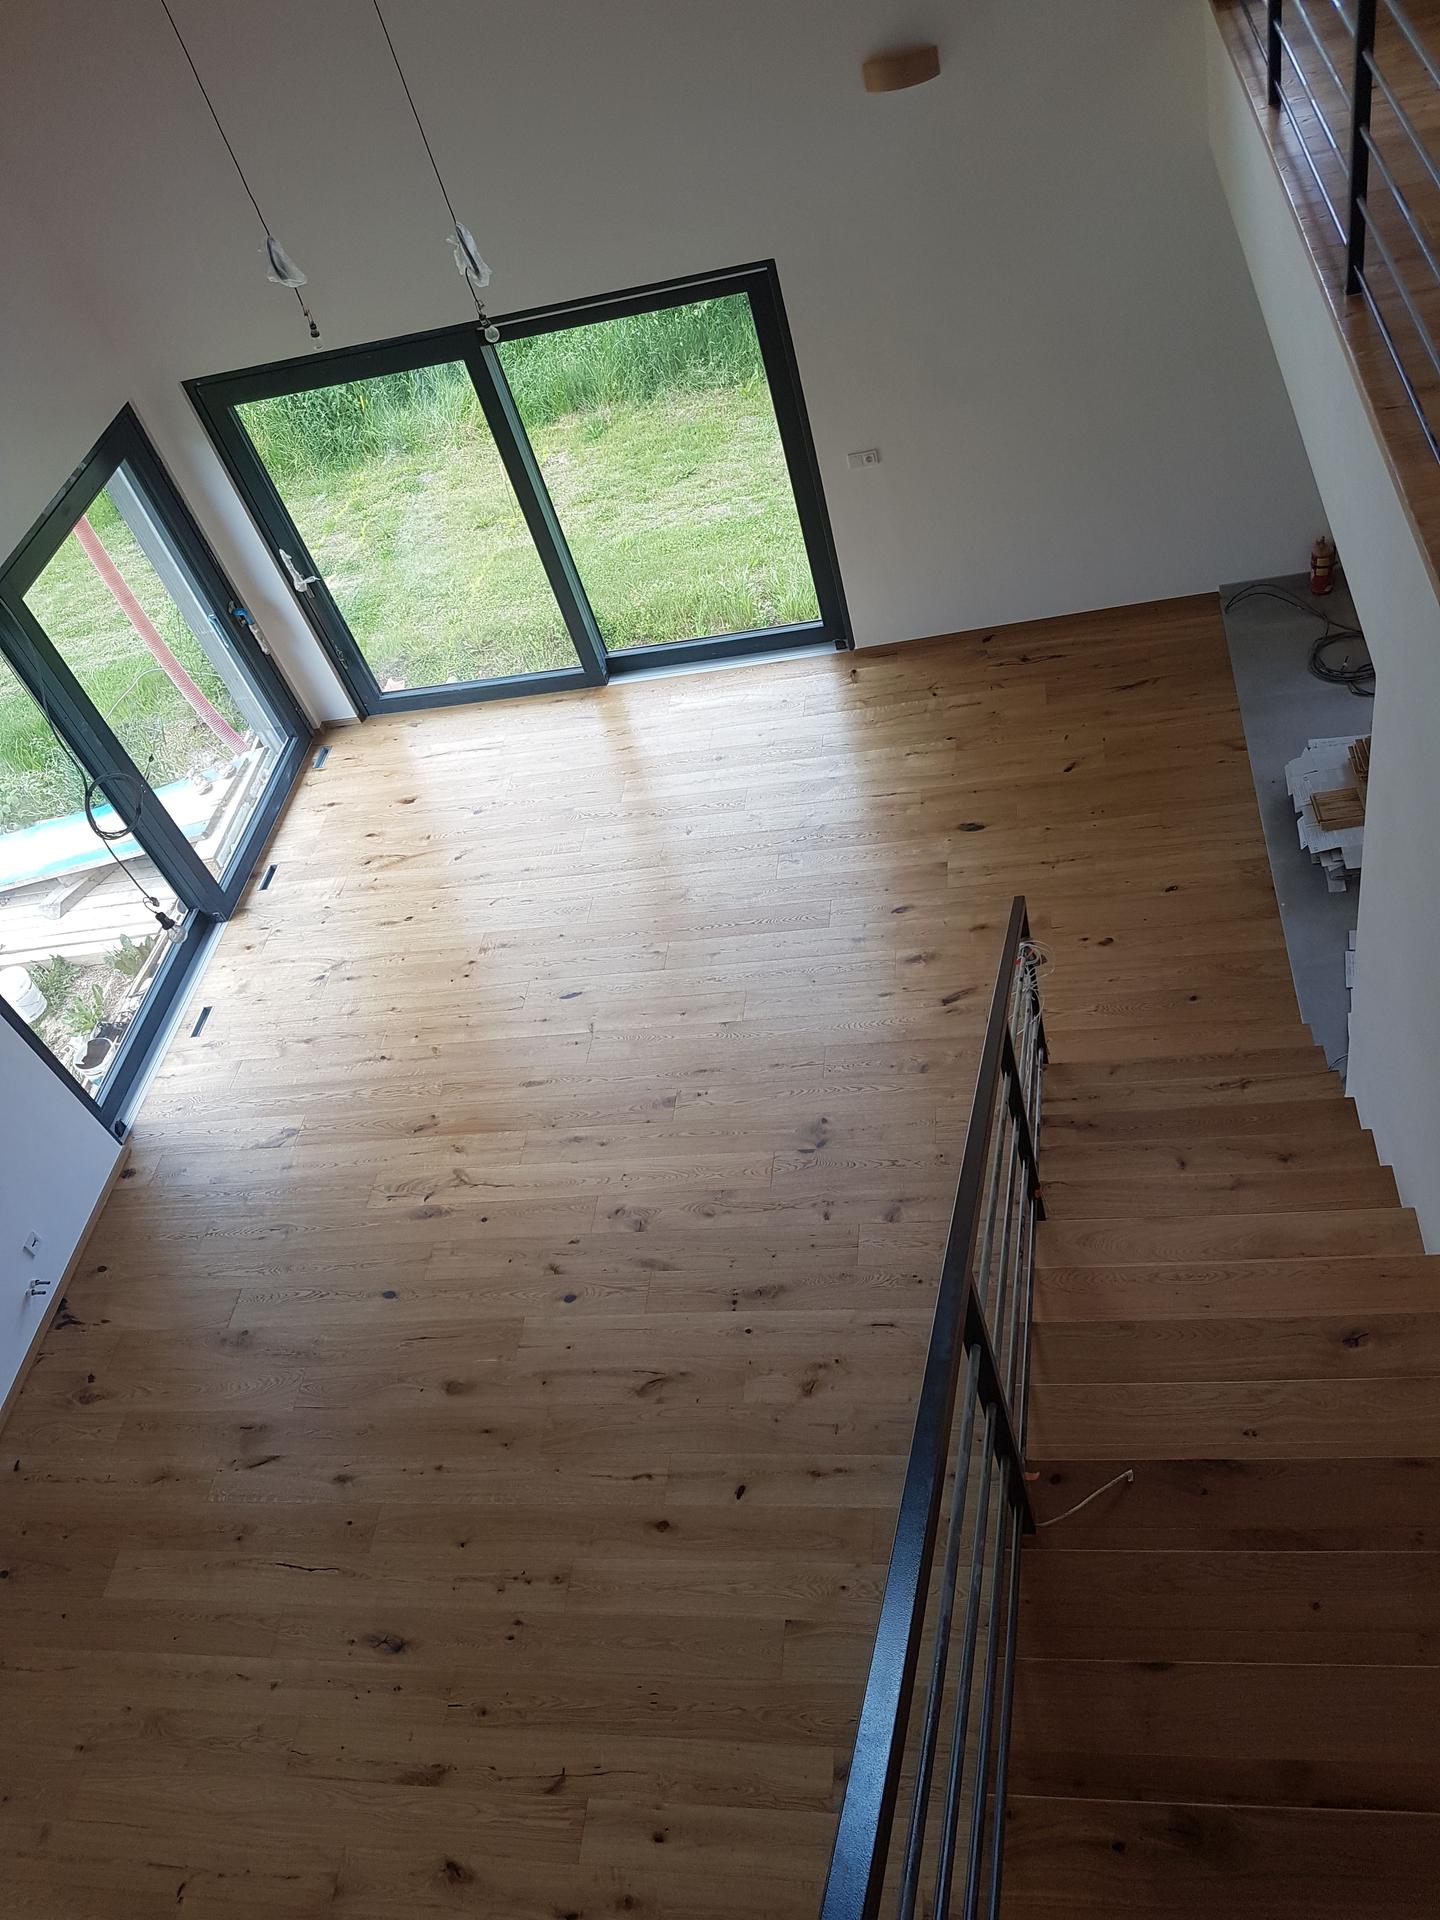 2022 Zařizujeme, vybavujeme a plníme dům rodinou :-) - Třívrstvá dřevěná podlaha Inspiration wood by Floor forever (Dub provence - Rustik) vypadá parádně. 